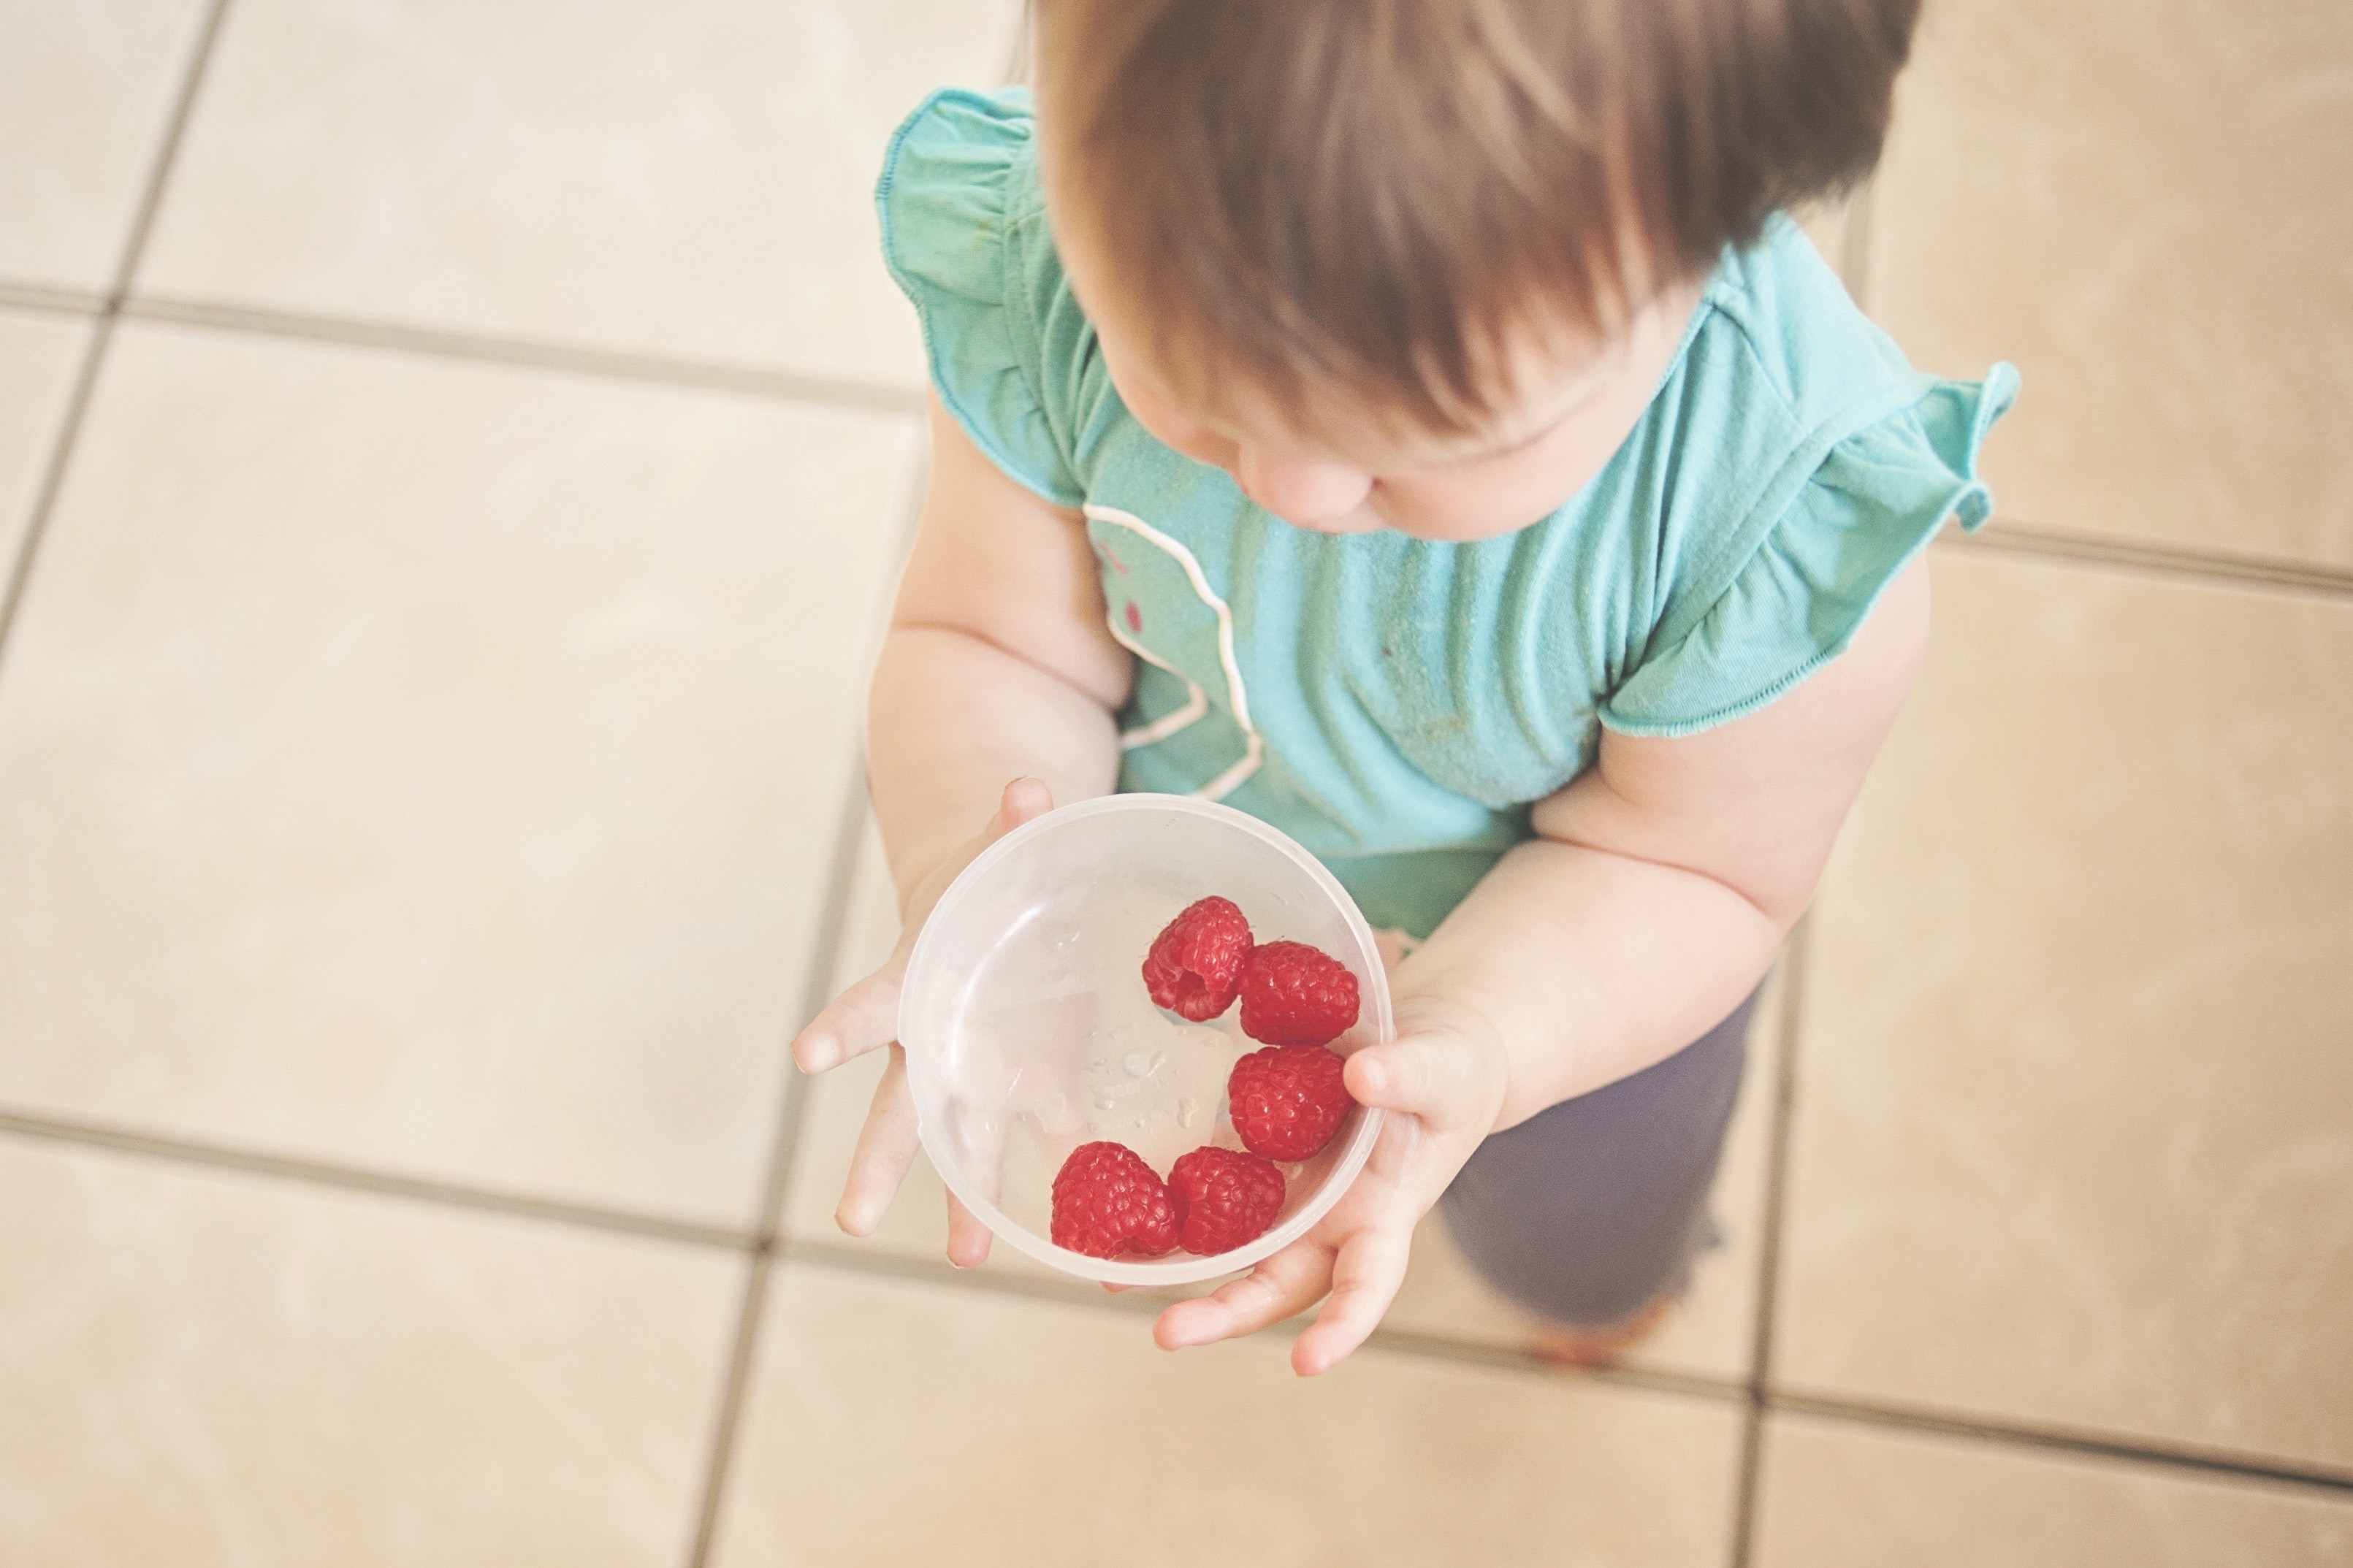 Criança se alimentando de morangos (Foto: Pixabay/Pexels)